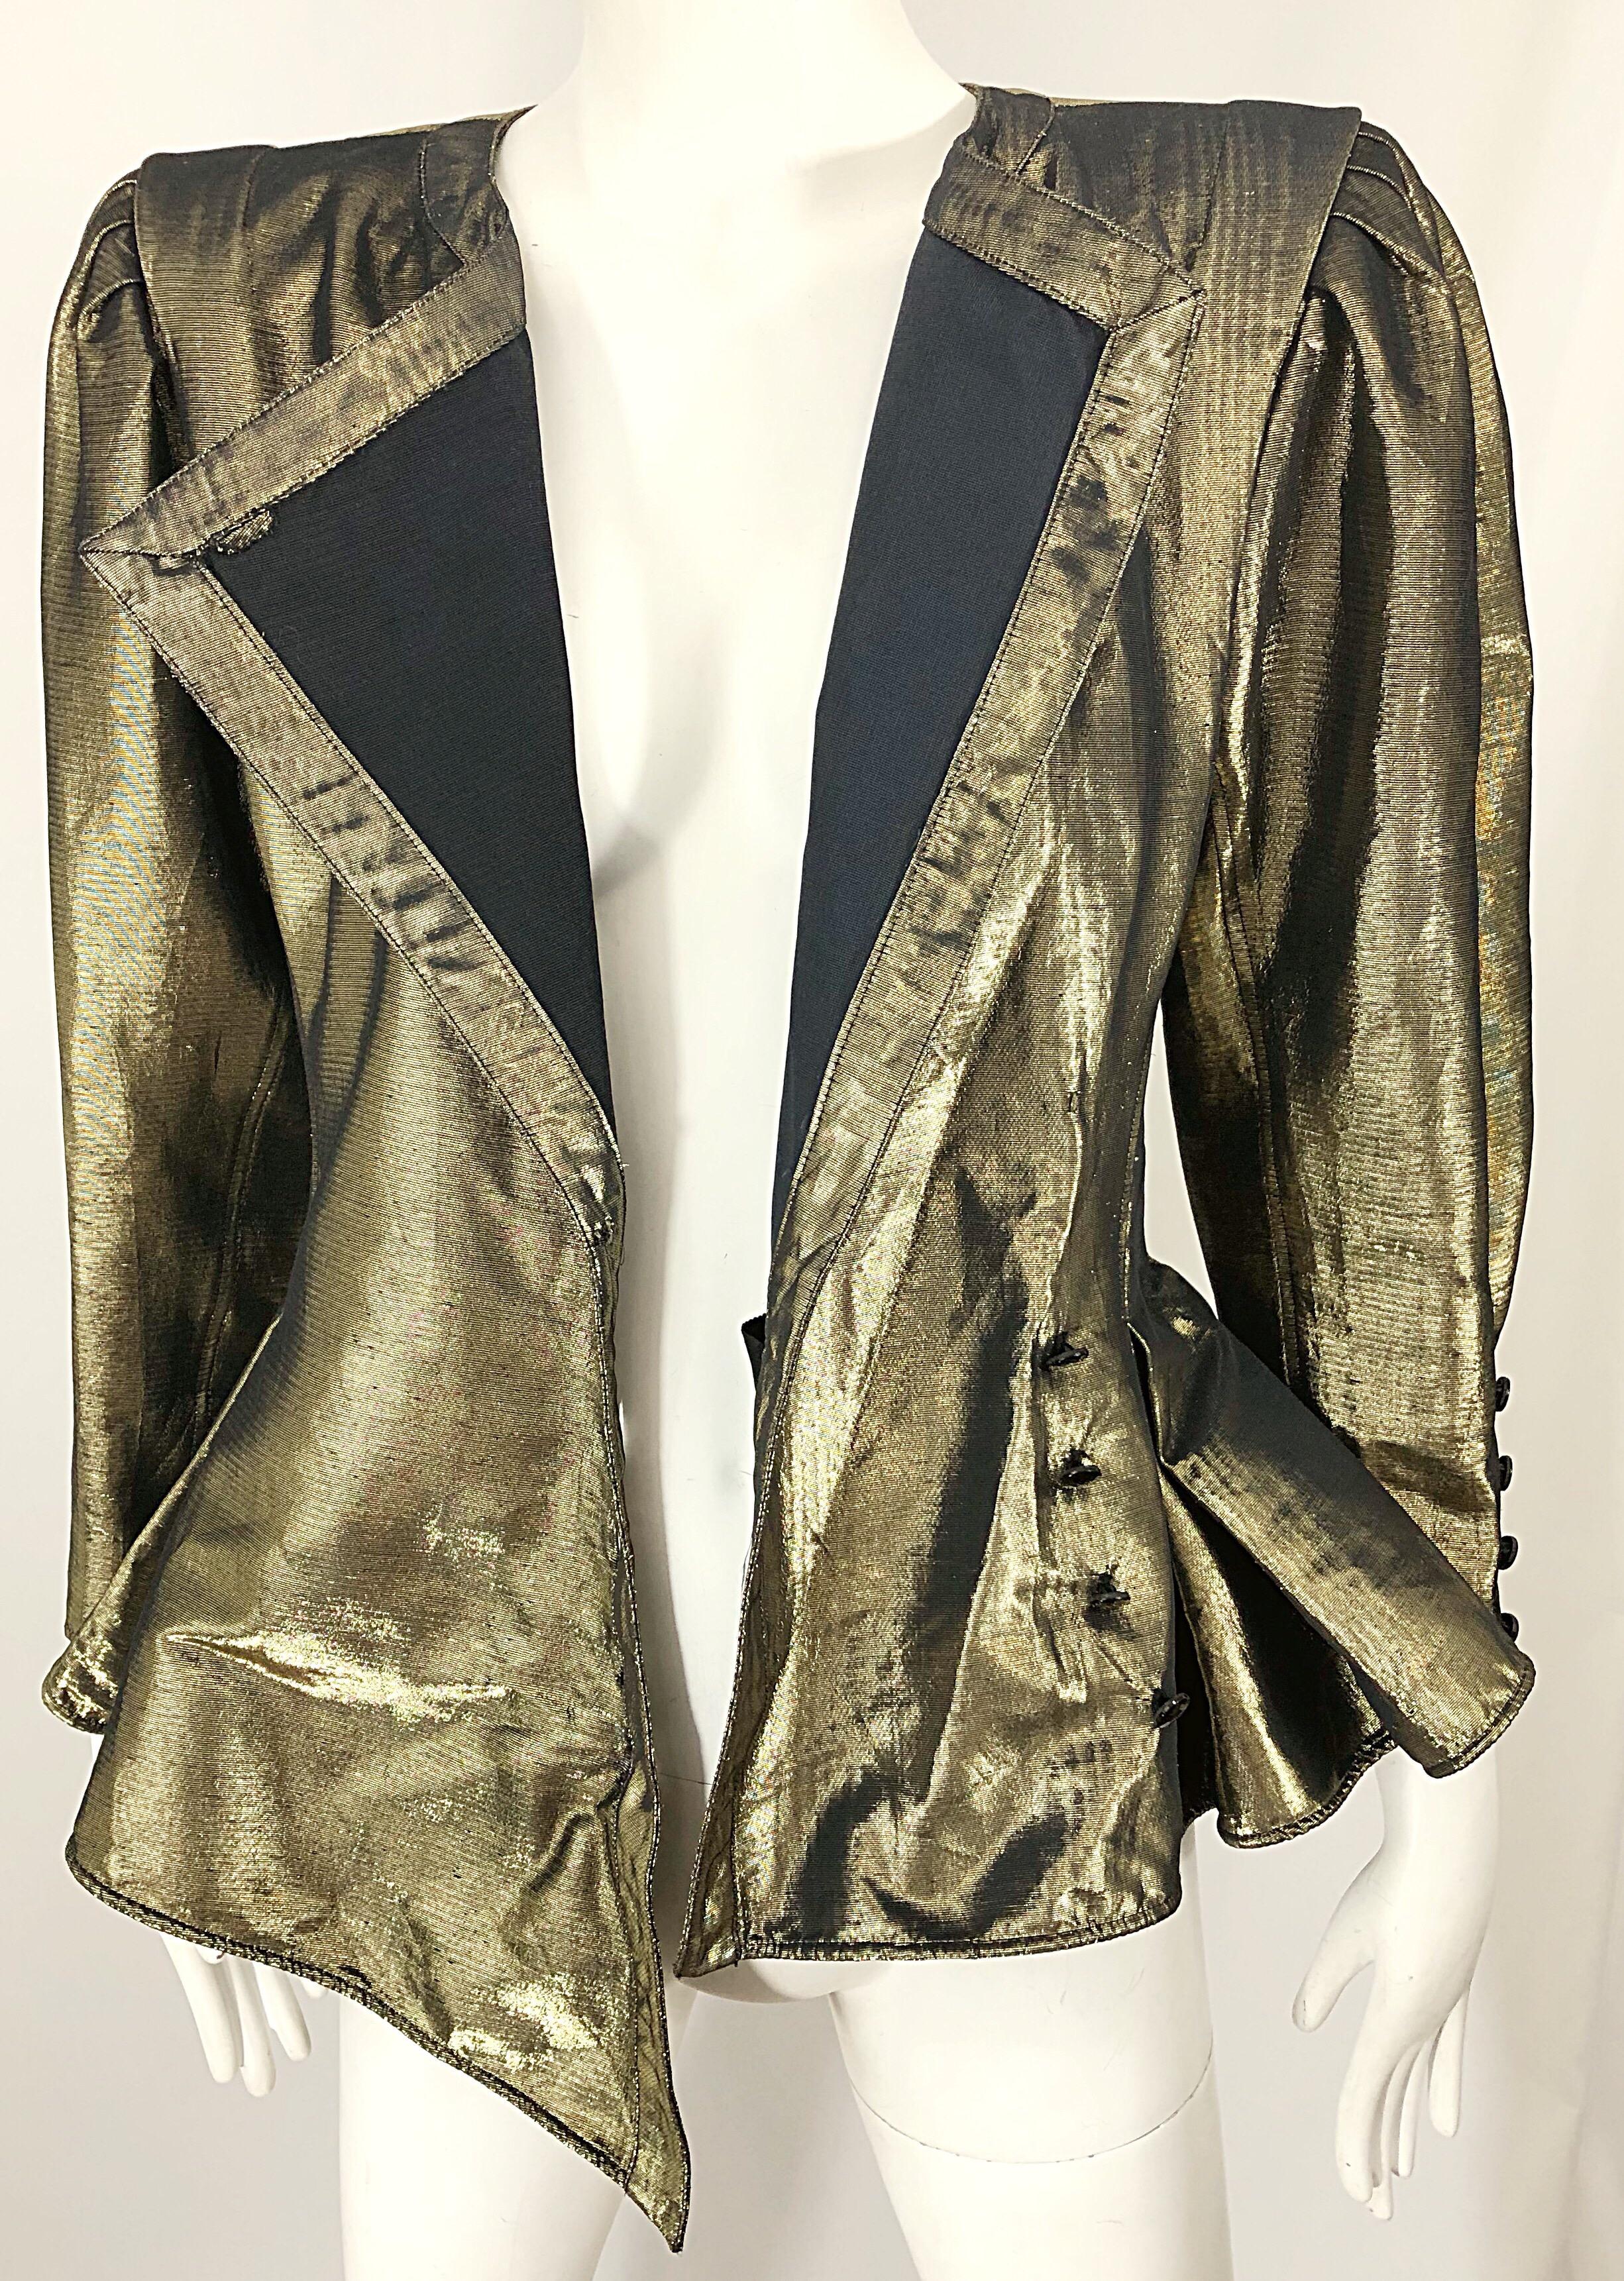 Avant Garde Emanuel Ungaro 1980s Gold Silk Metallic Vintage Peplum 80s Jacket 8